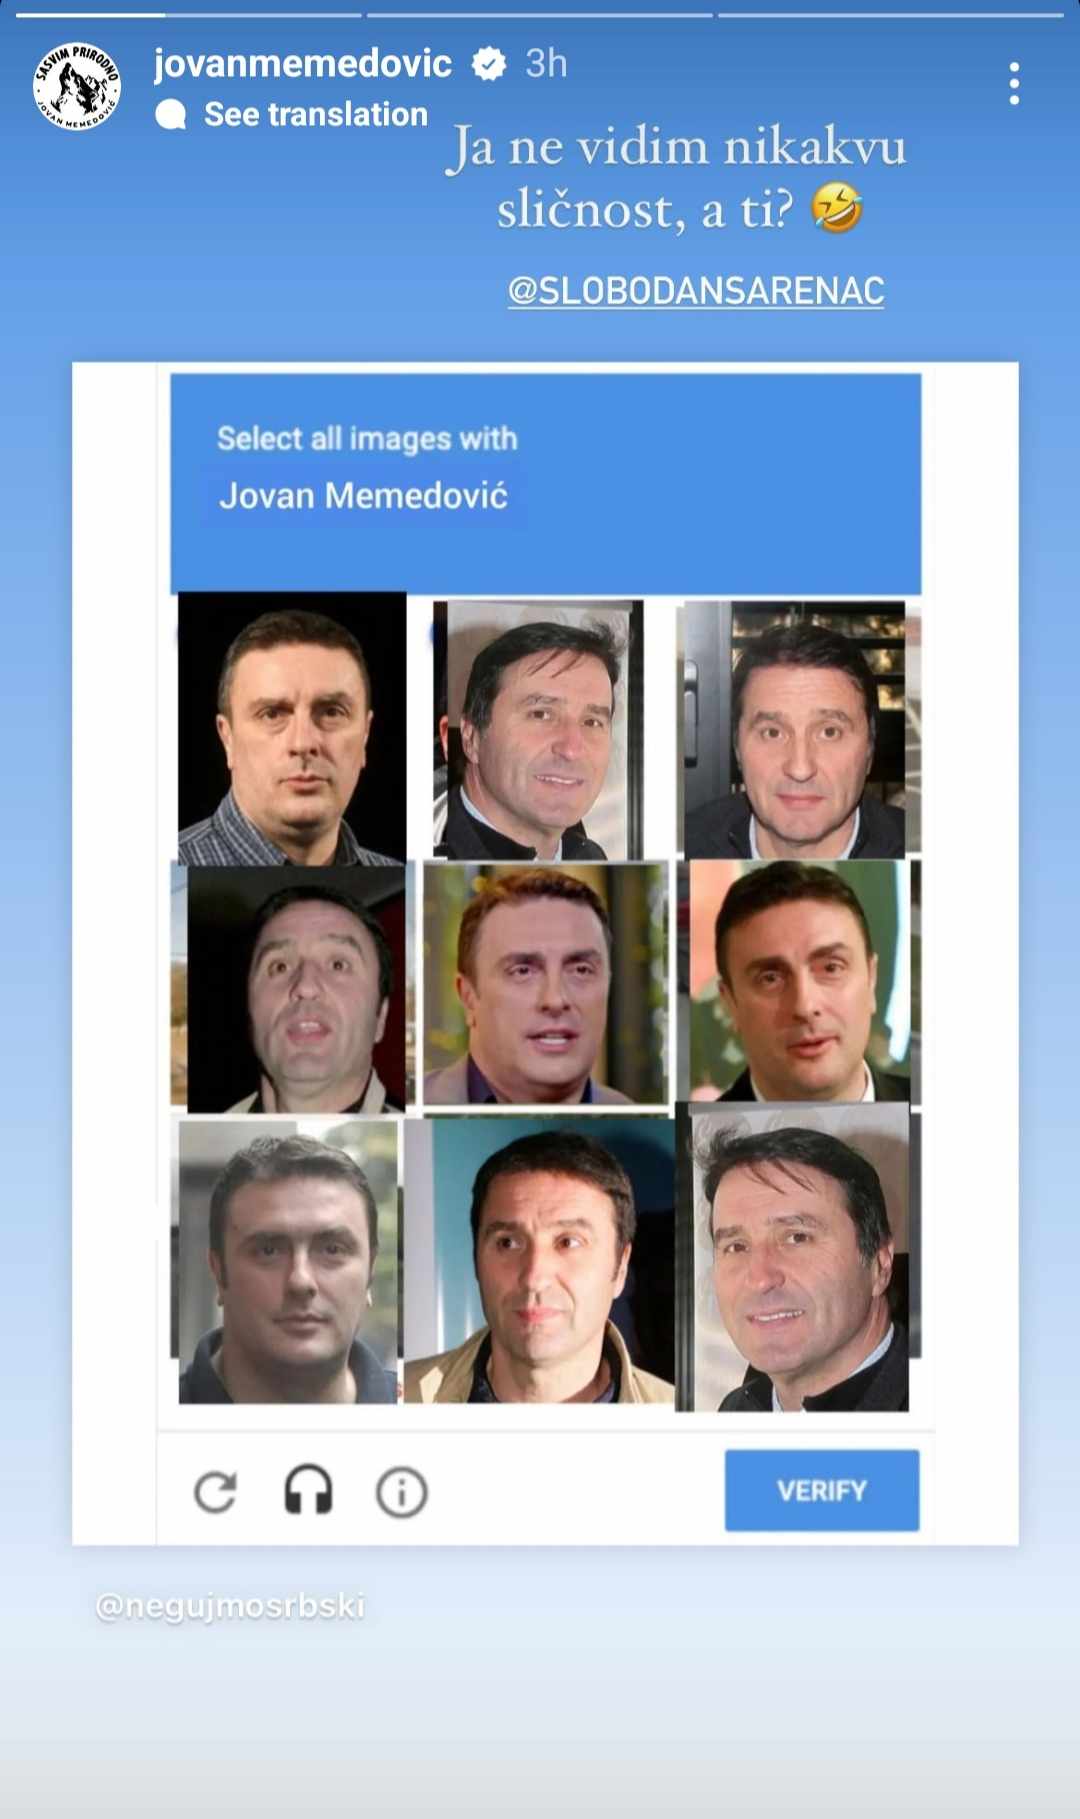 Ovo je nemoguća misija: Internetom se deli test sa slikom Jovana Memedovića za koji se smatra da "niko ne ume da ga reši"